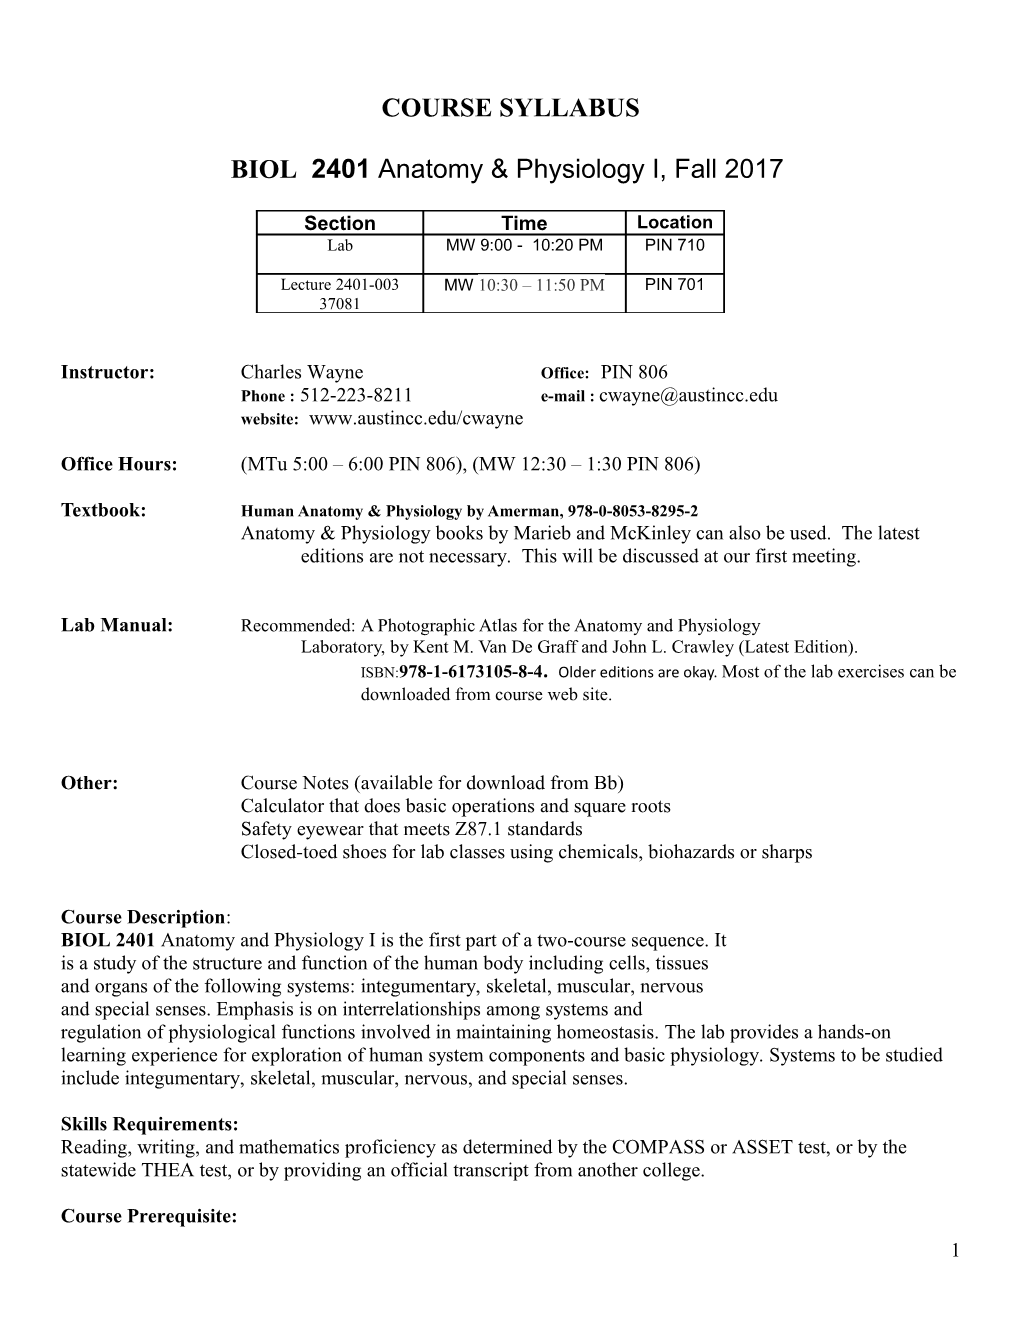 BIOL 2401 Anatomy & Physiology I, Fall 2017